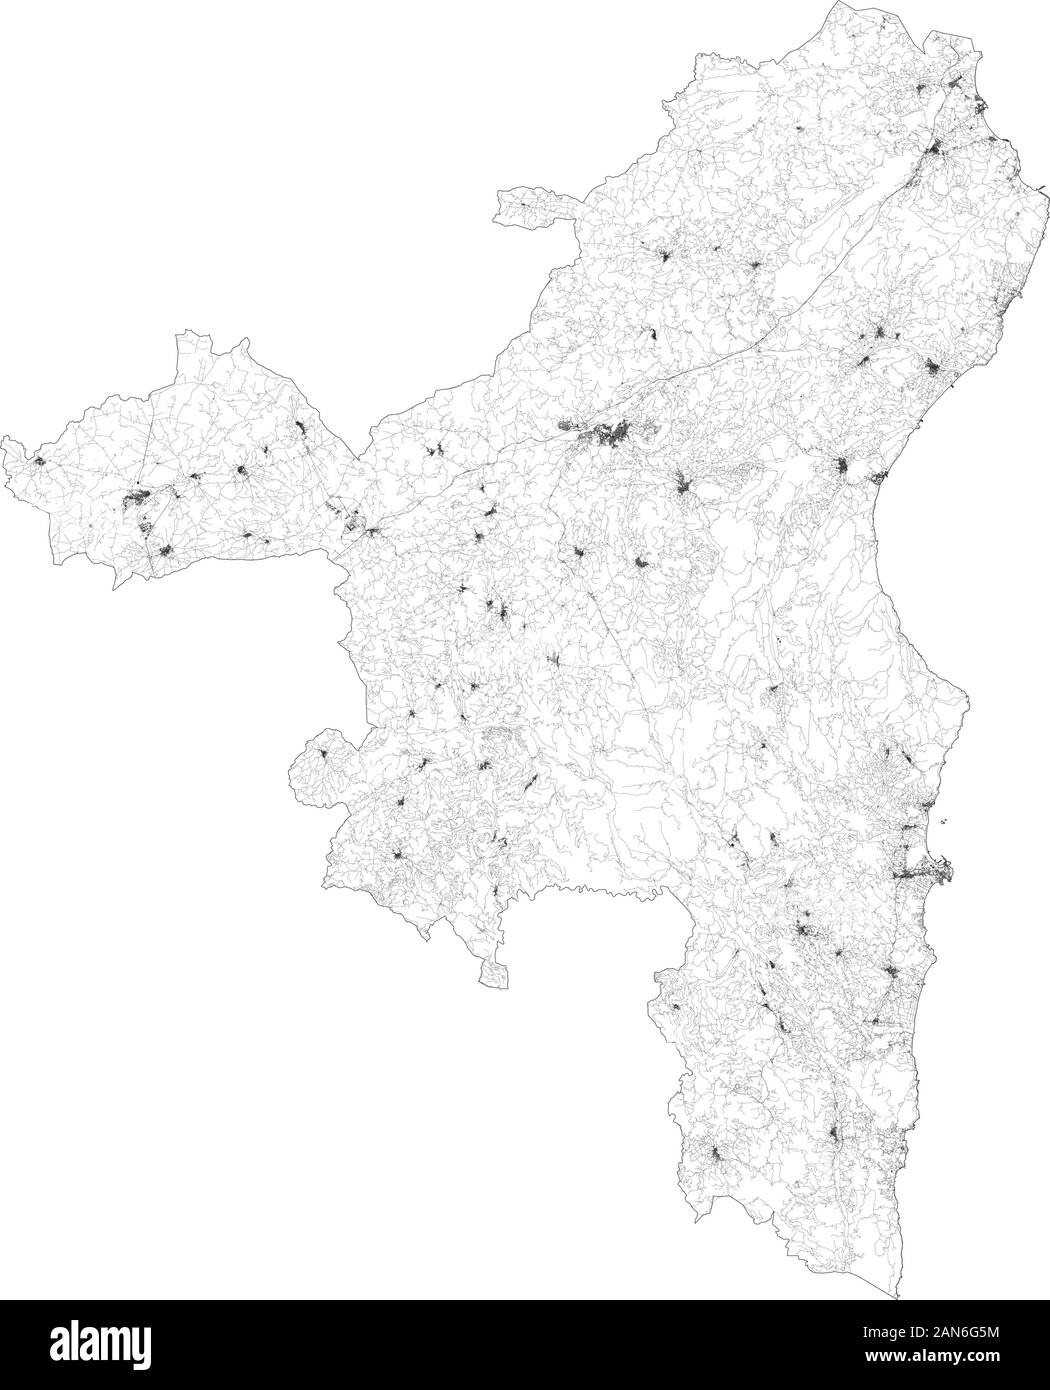 Sat-Karte der Provinz Nuoro Städte und Straßen, Gebäude und Straßen der Umgebung. Region Sardinien, Italien. Sardegna. Karte Straßen Stock Vektor